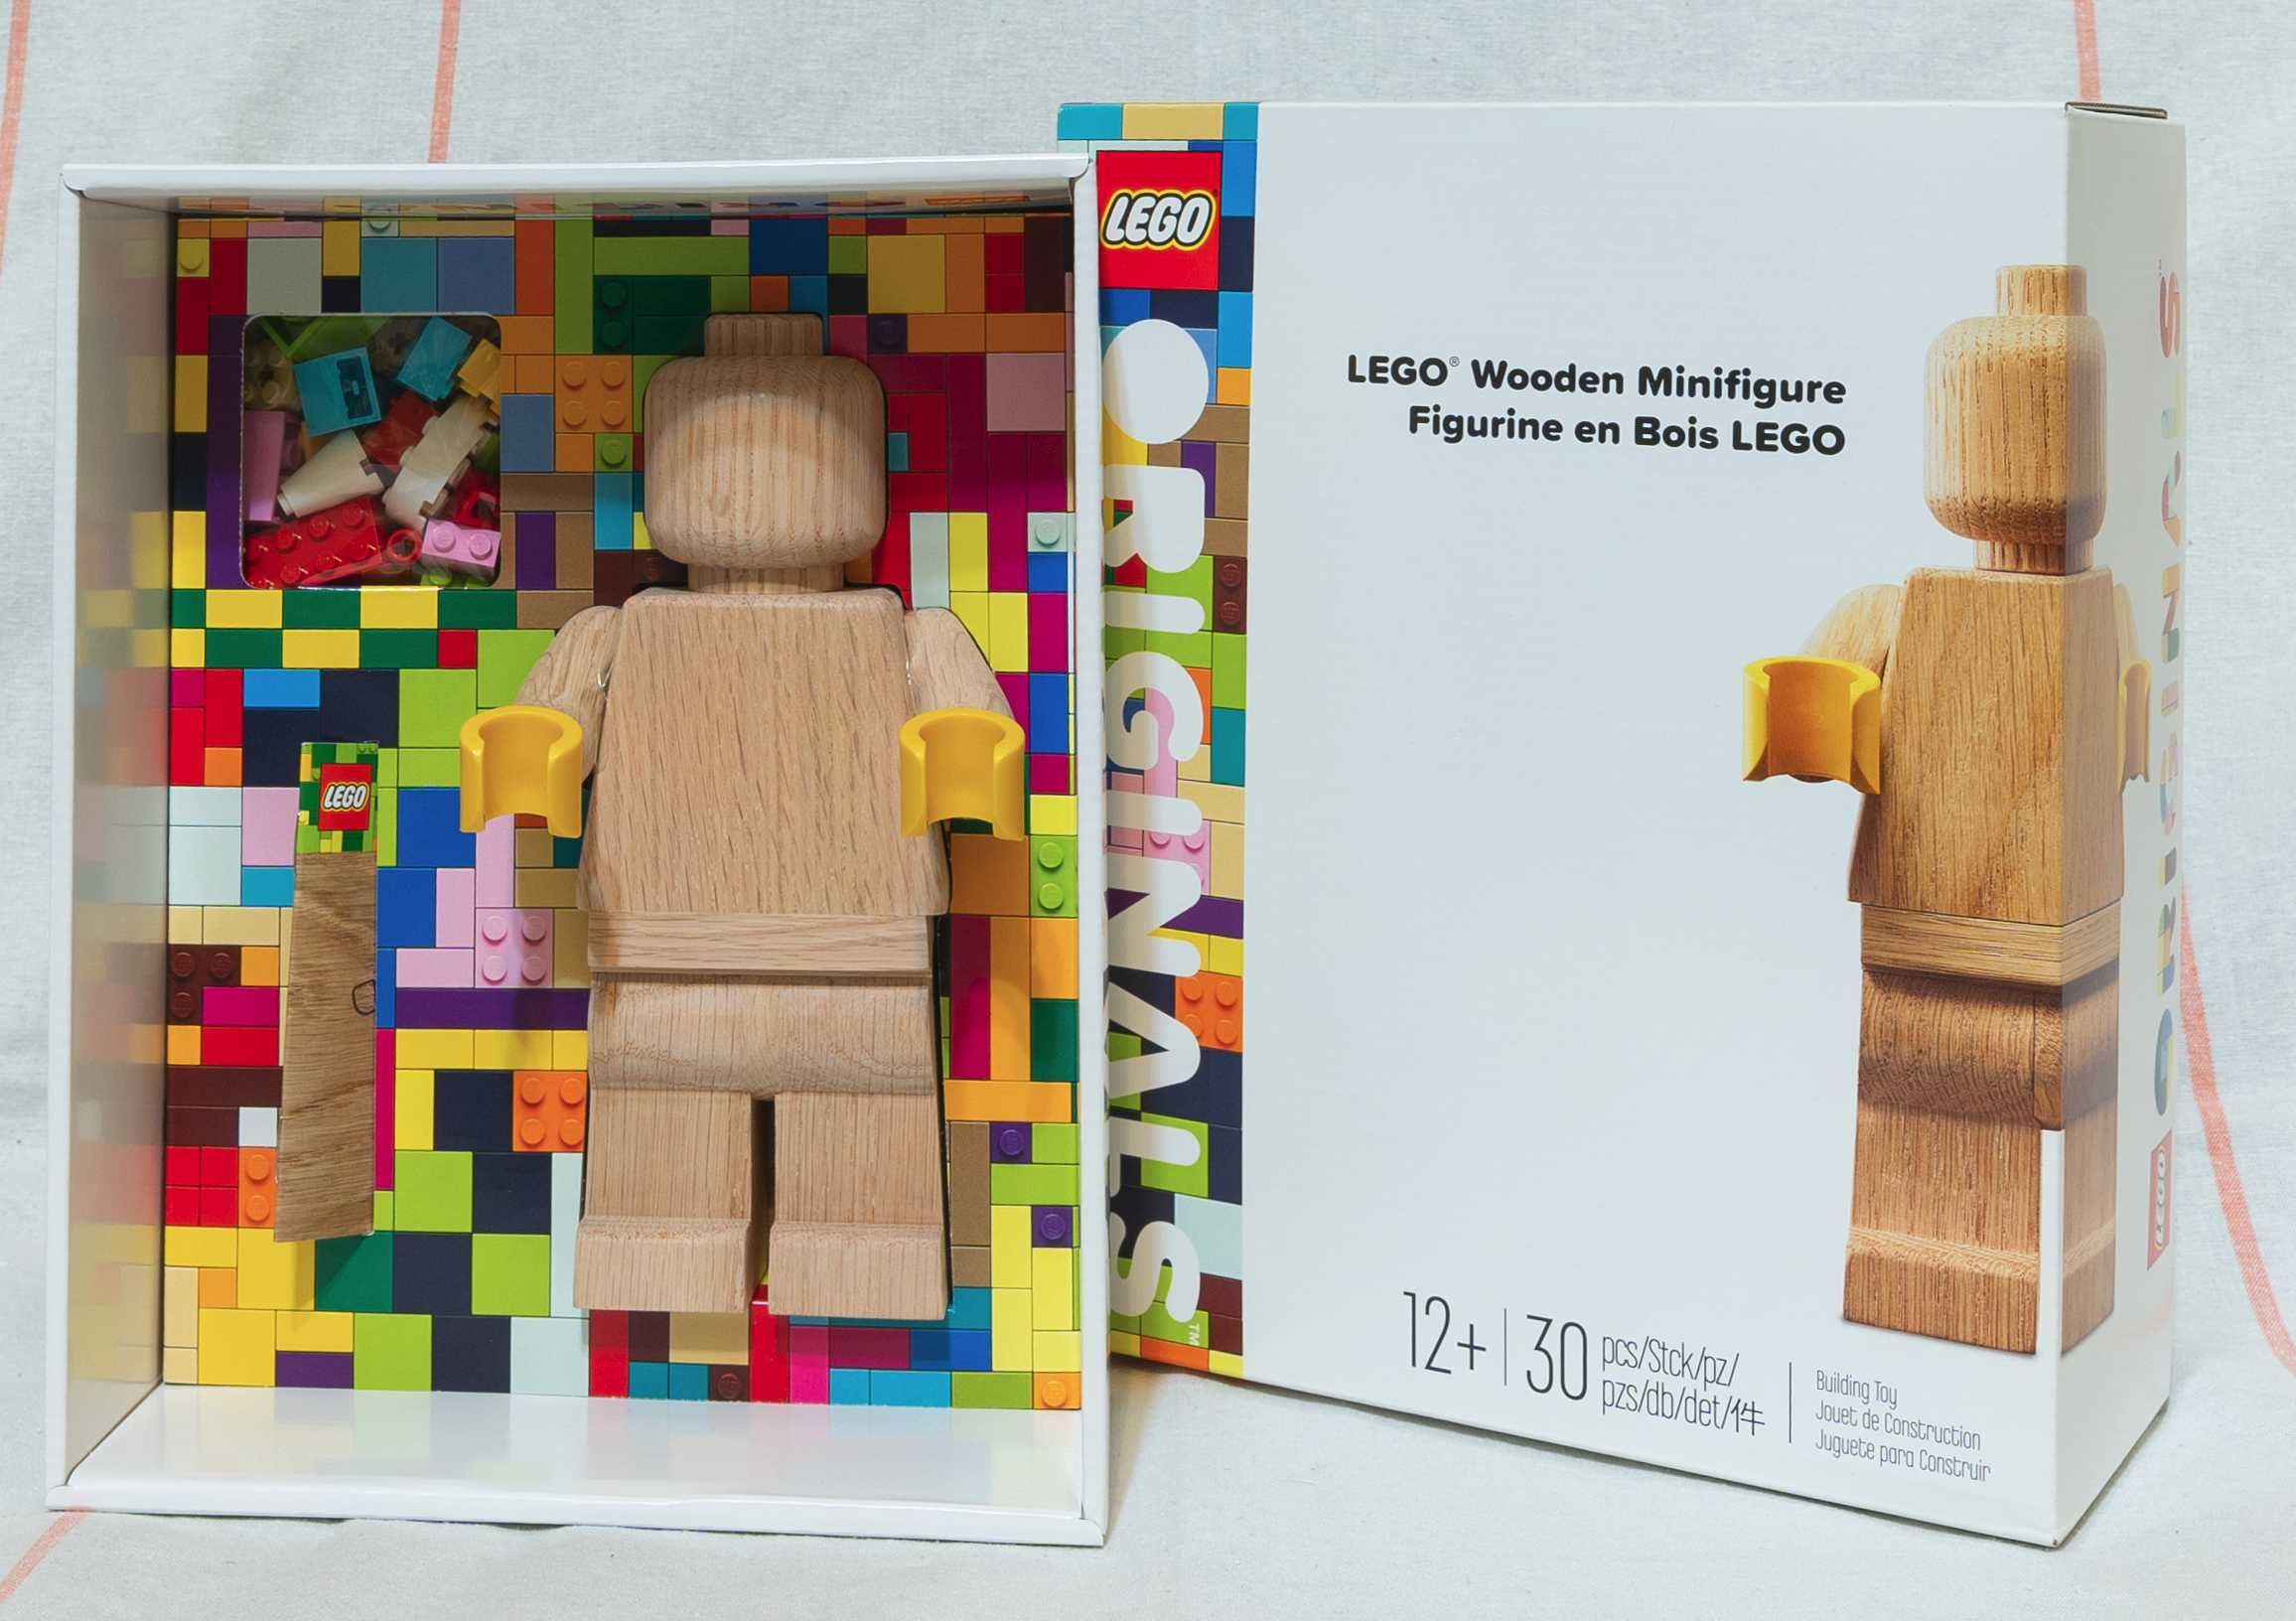 LEGO Figurina din lemn 20 cm [Sigilat]